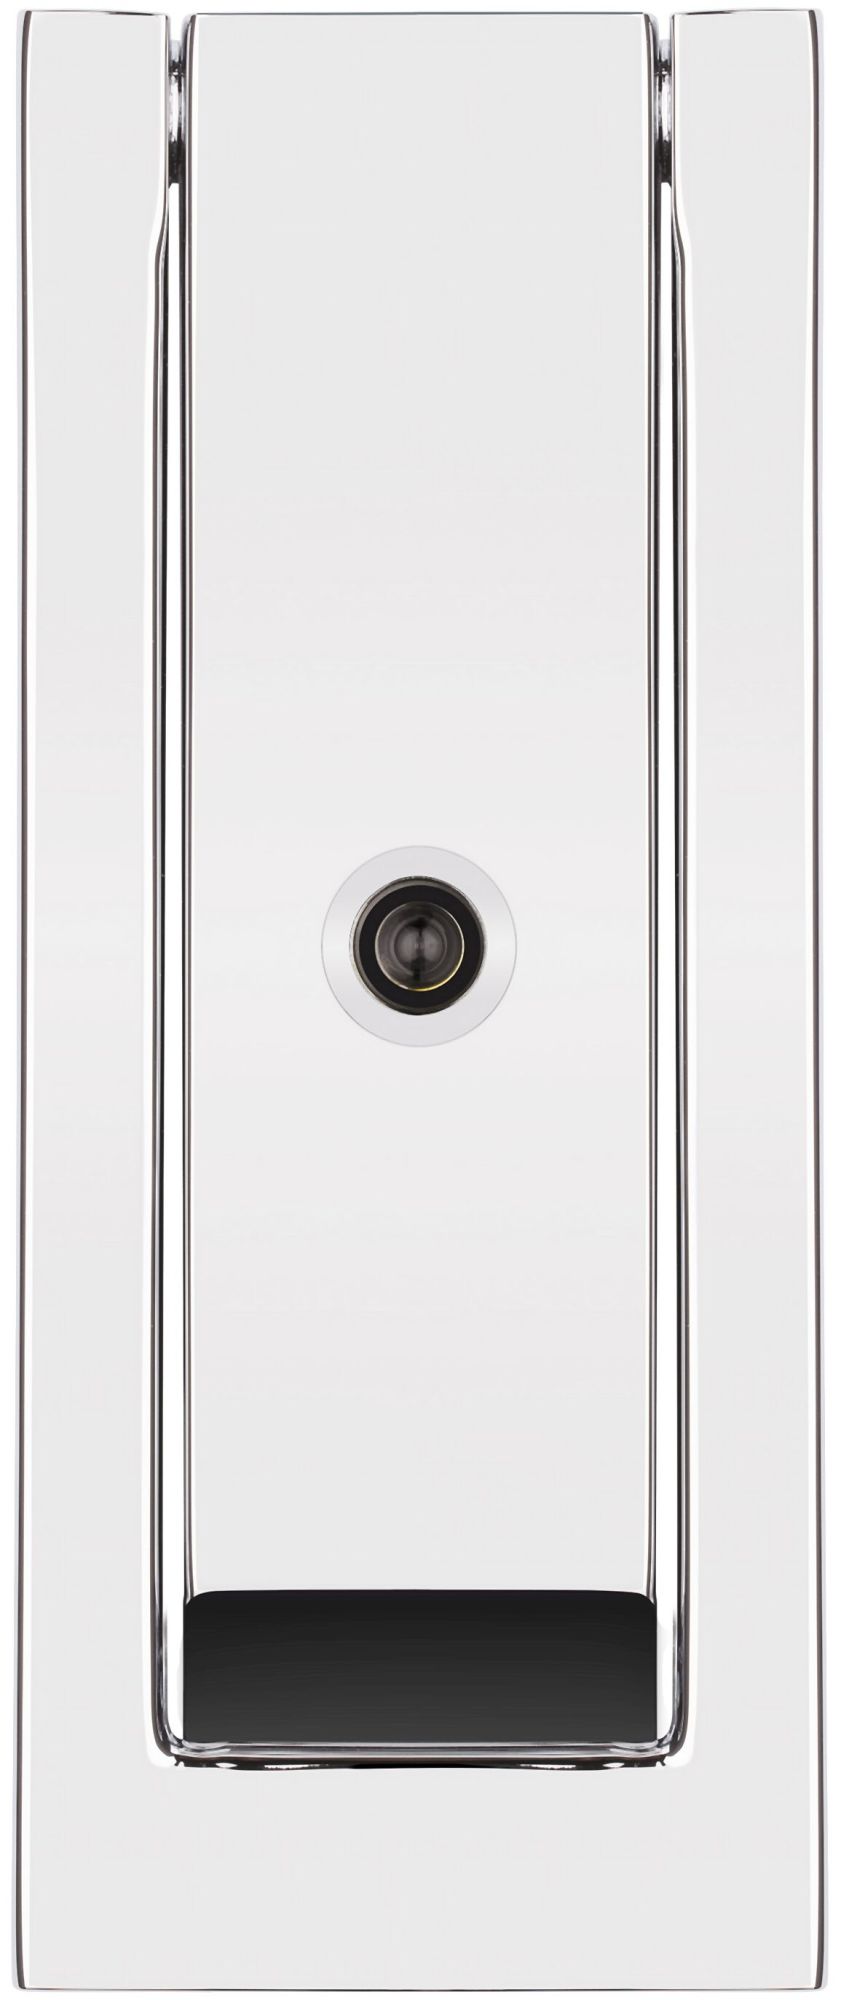 Baldwin 0185 Modern Rectangular Door Knocker Brass